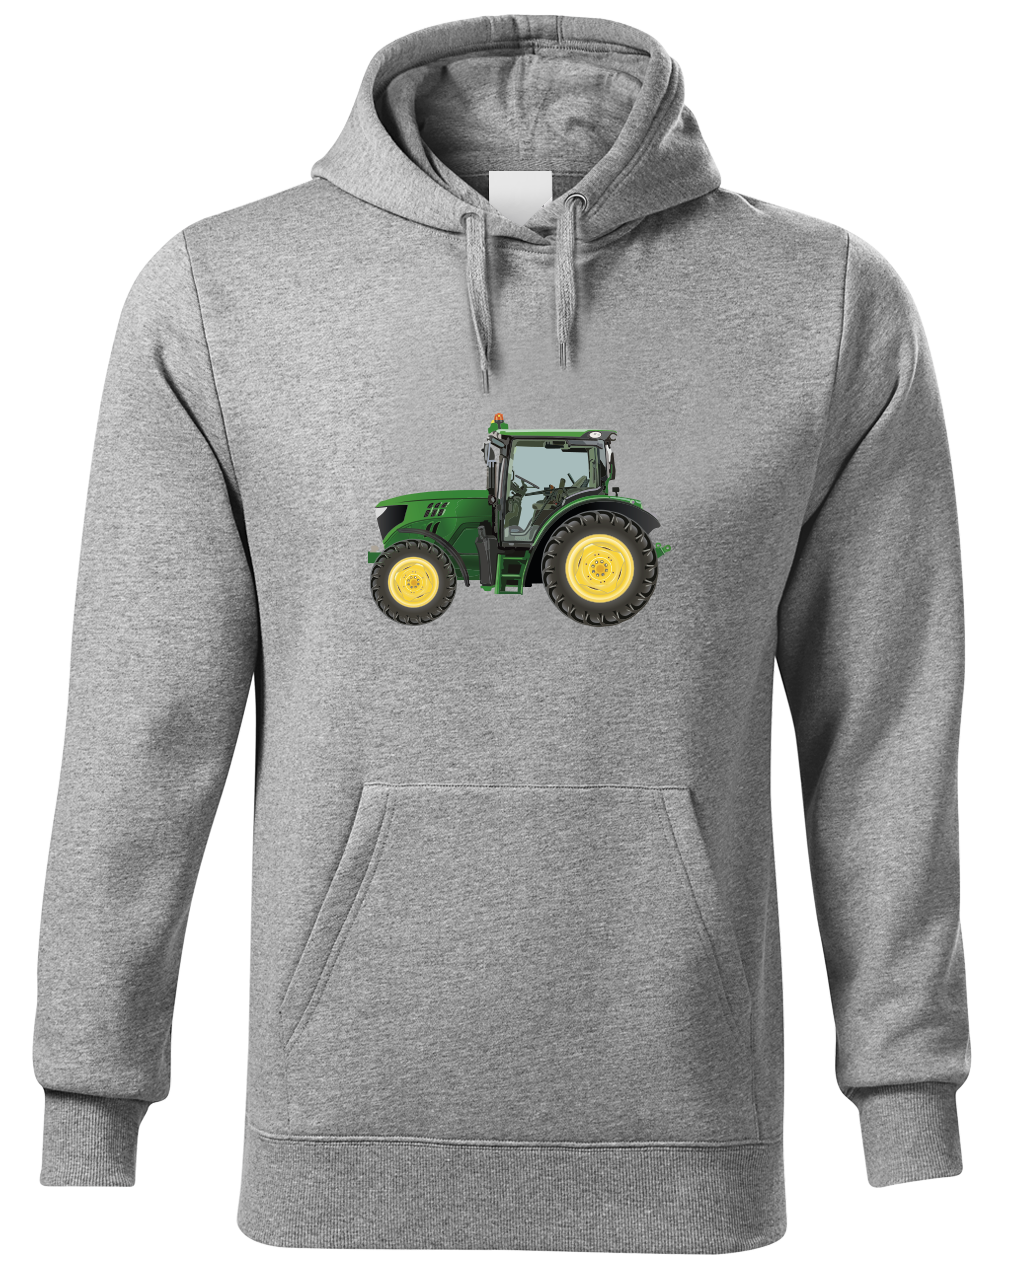 Mikina s traktorem - Zelený traktor Velikost: M, Barva: Světle šedá